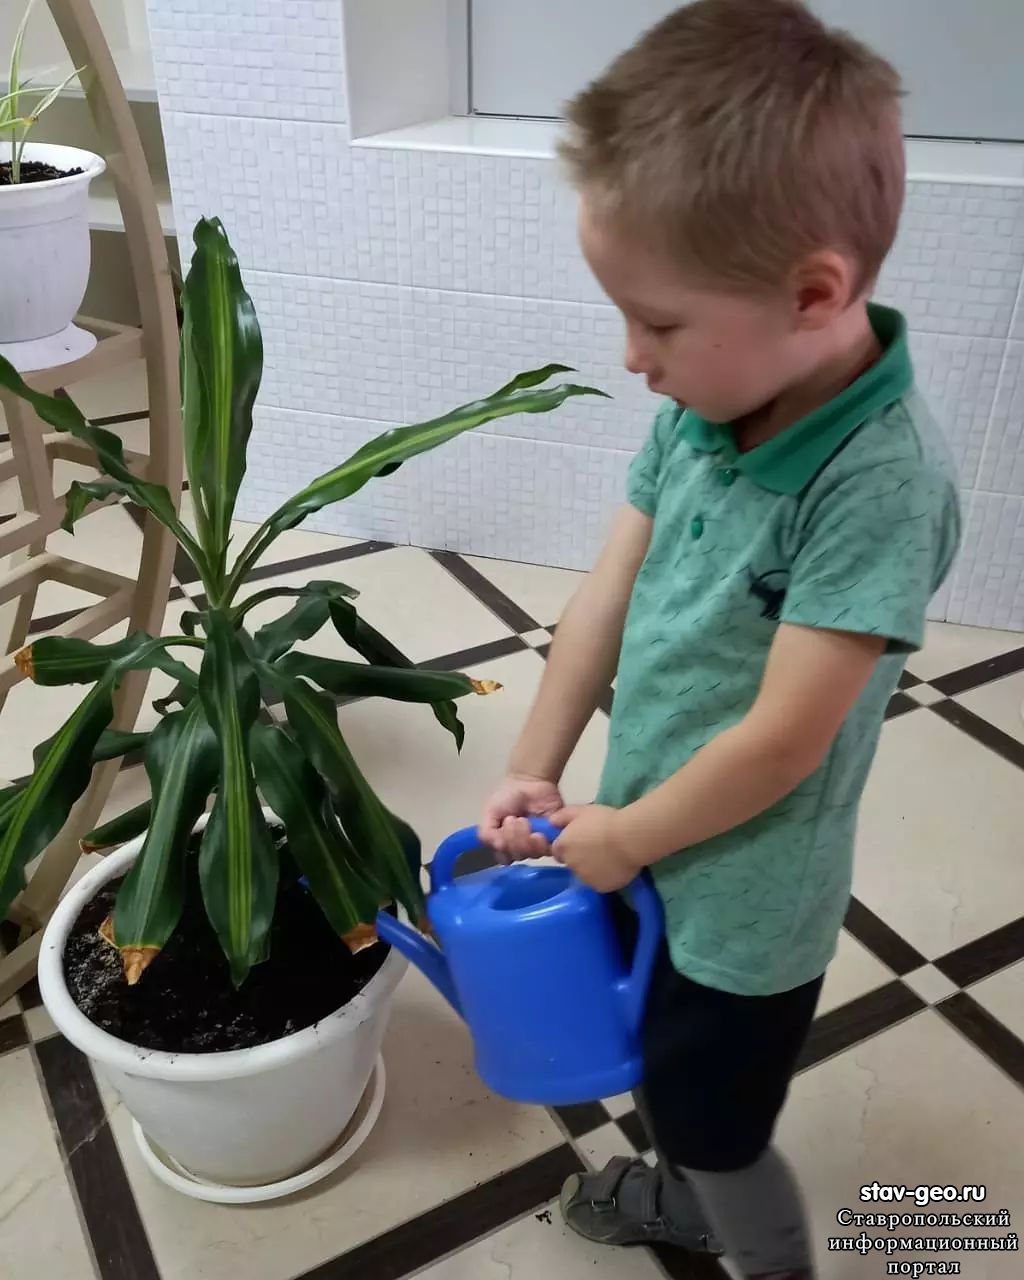 Знакомство с комнатными растениями одна из задач экологического воспитания